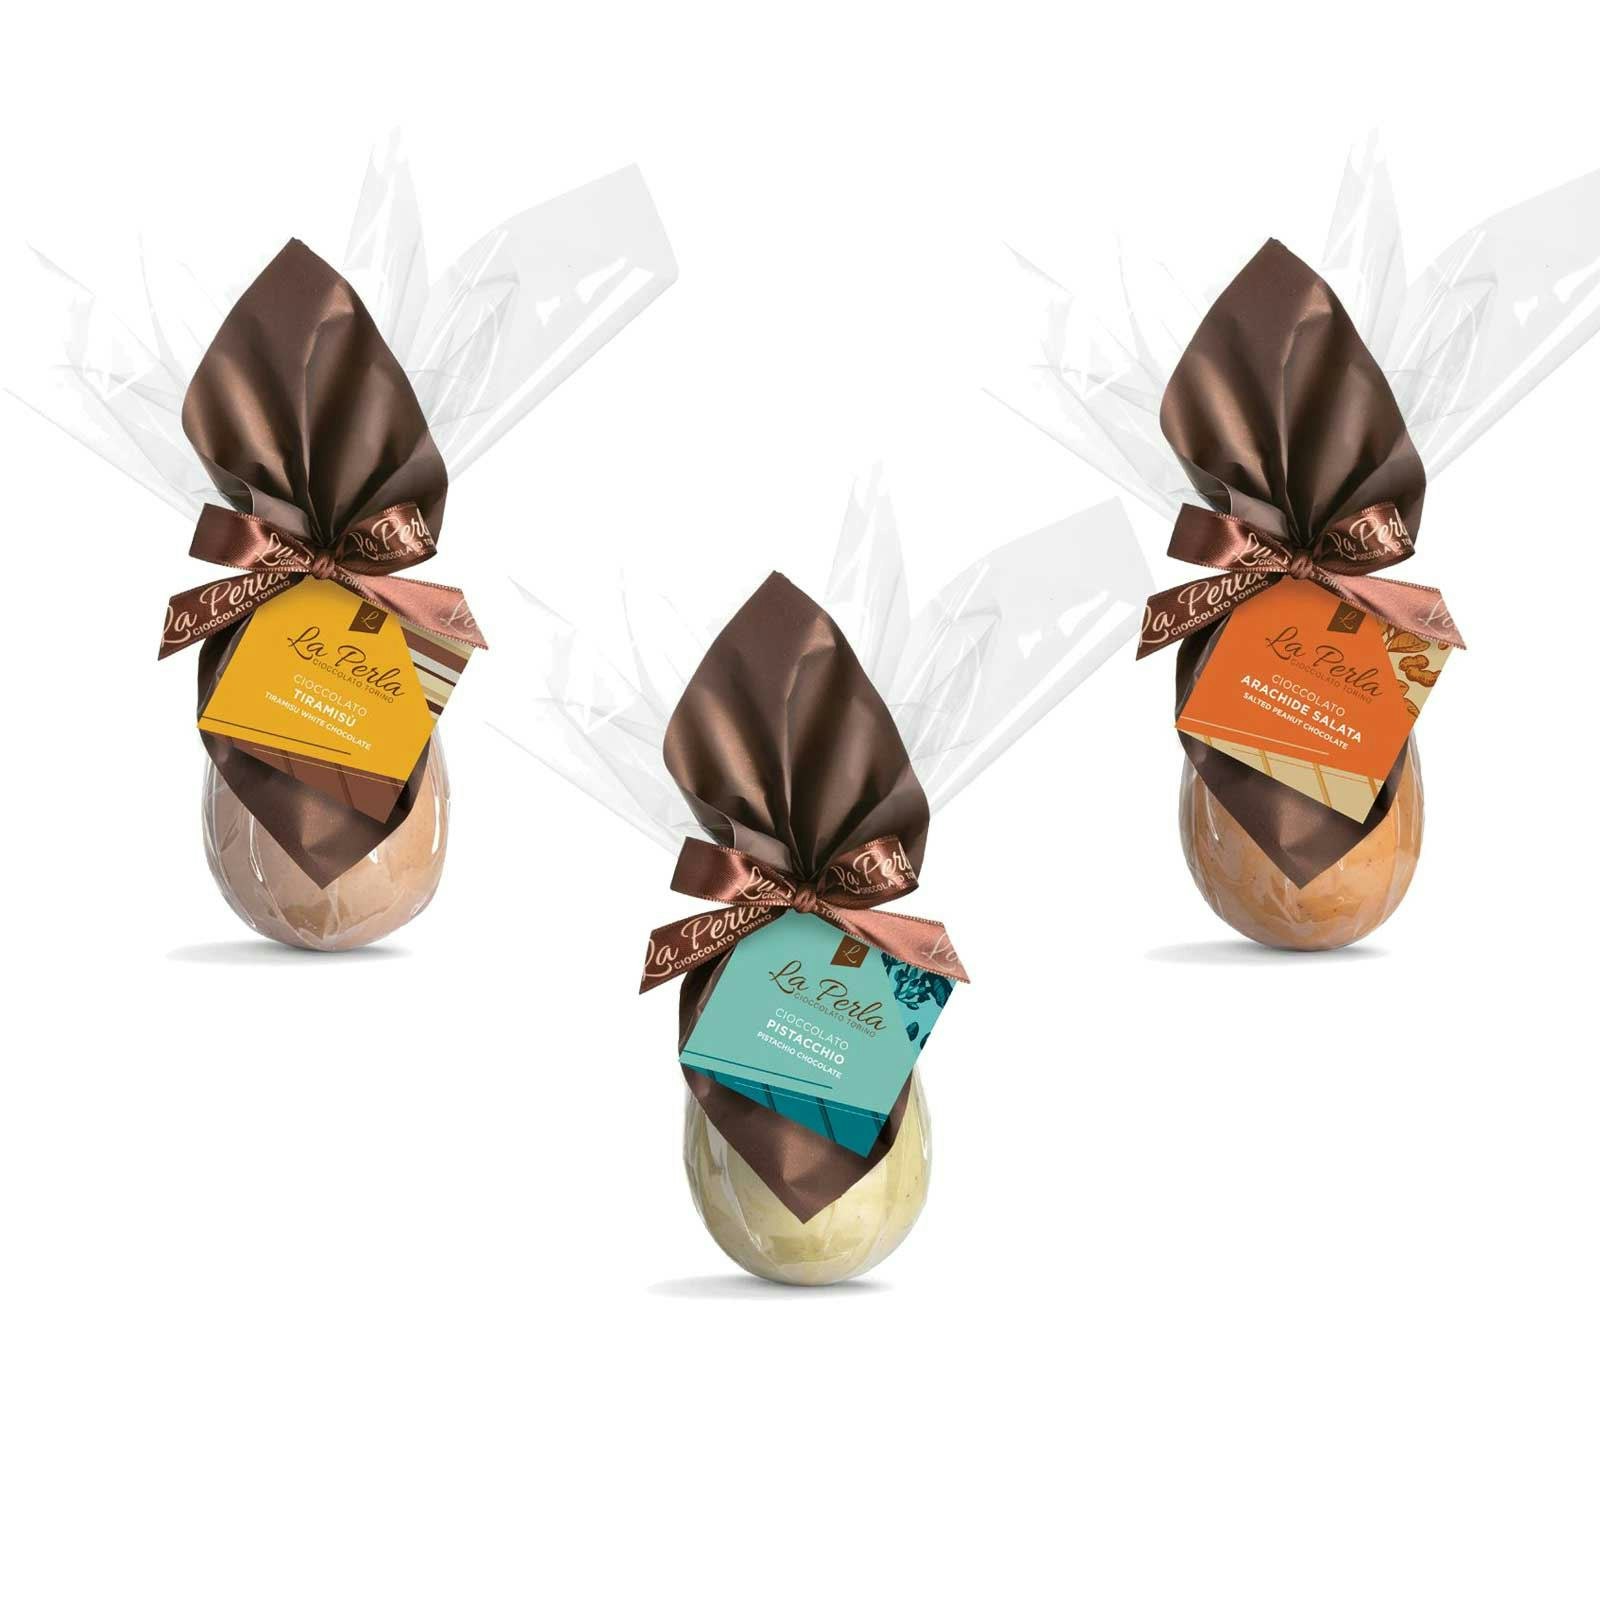 Chocolate eggs – Peanut, Pistachio and Tiramisú